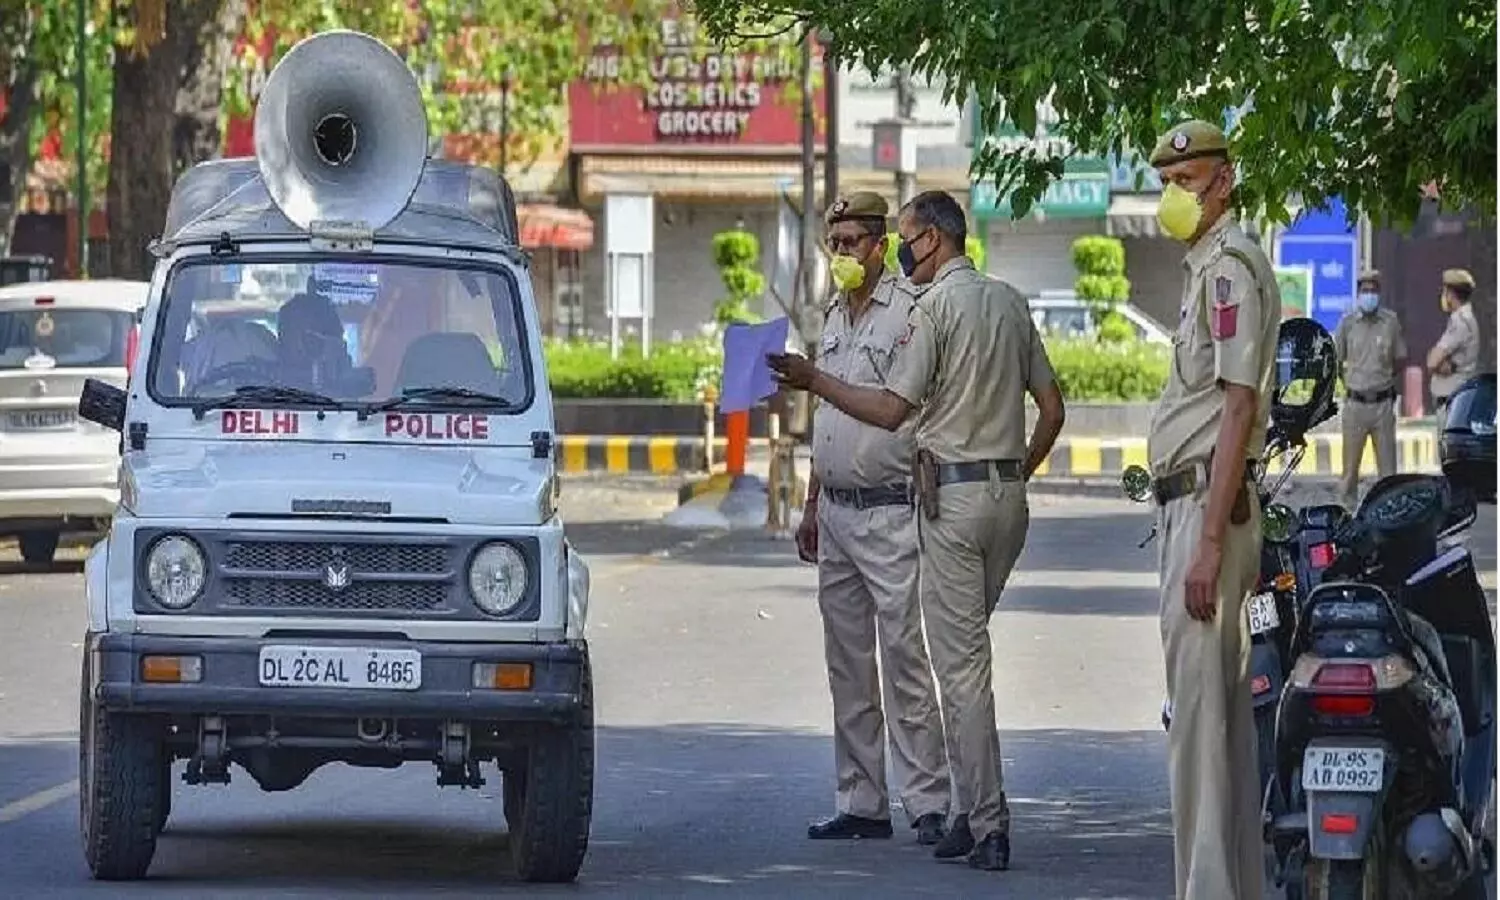 High alert in Delhi: तालिबान ने दी दिल्ली को बम से उड़ाने की धमकी, बाजारों में सर्च ऑपरेशन जारी